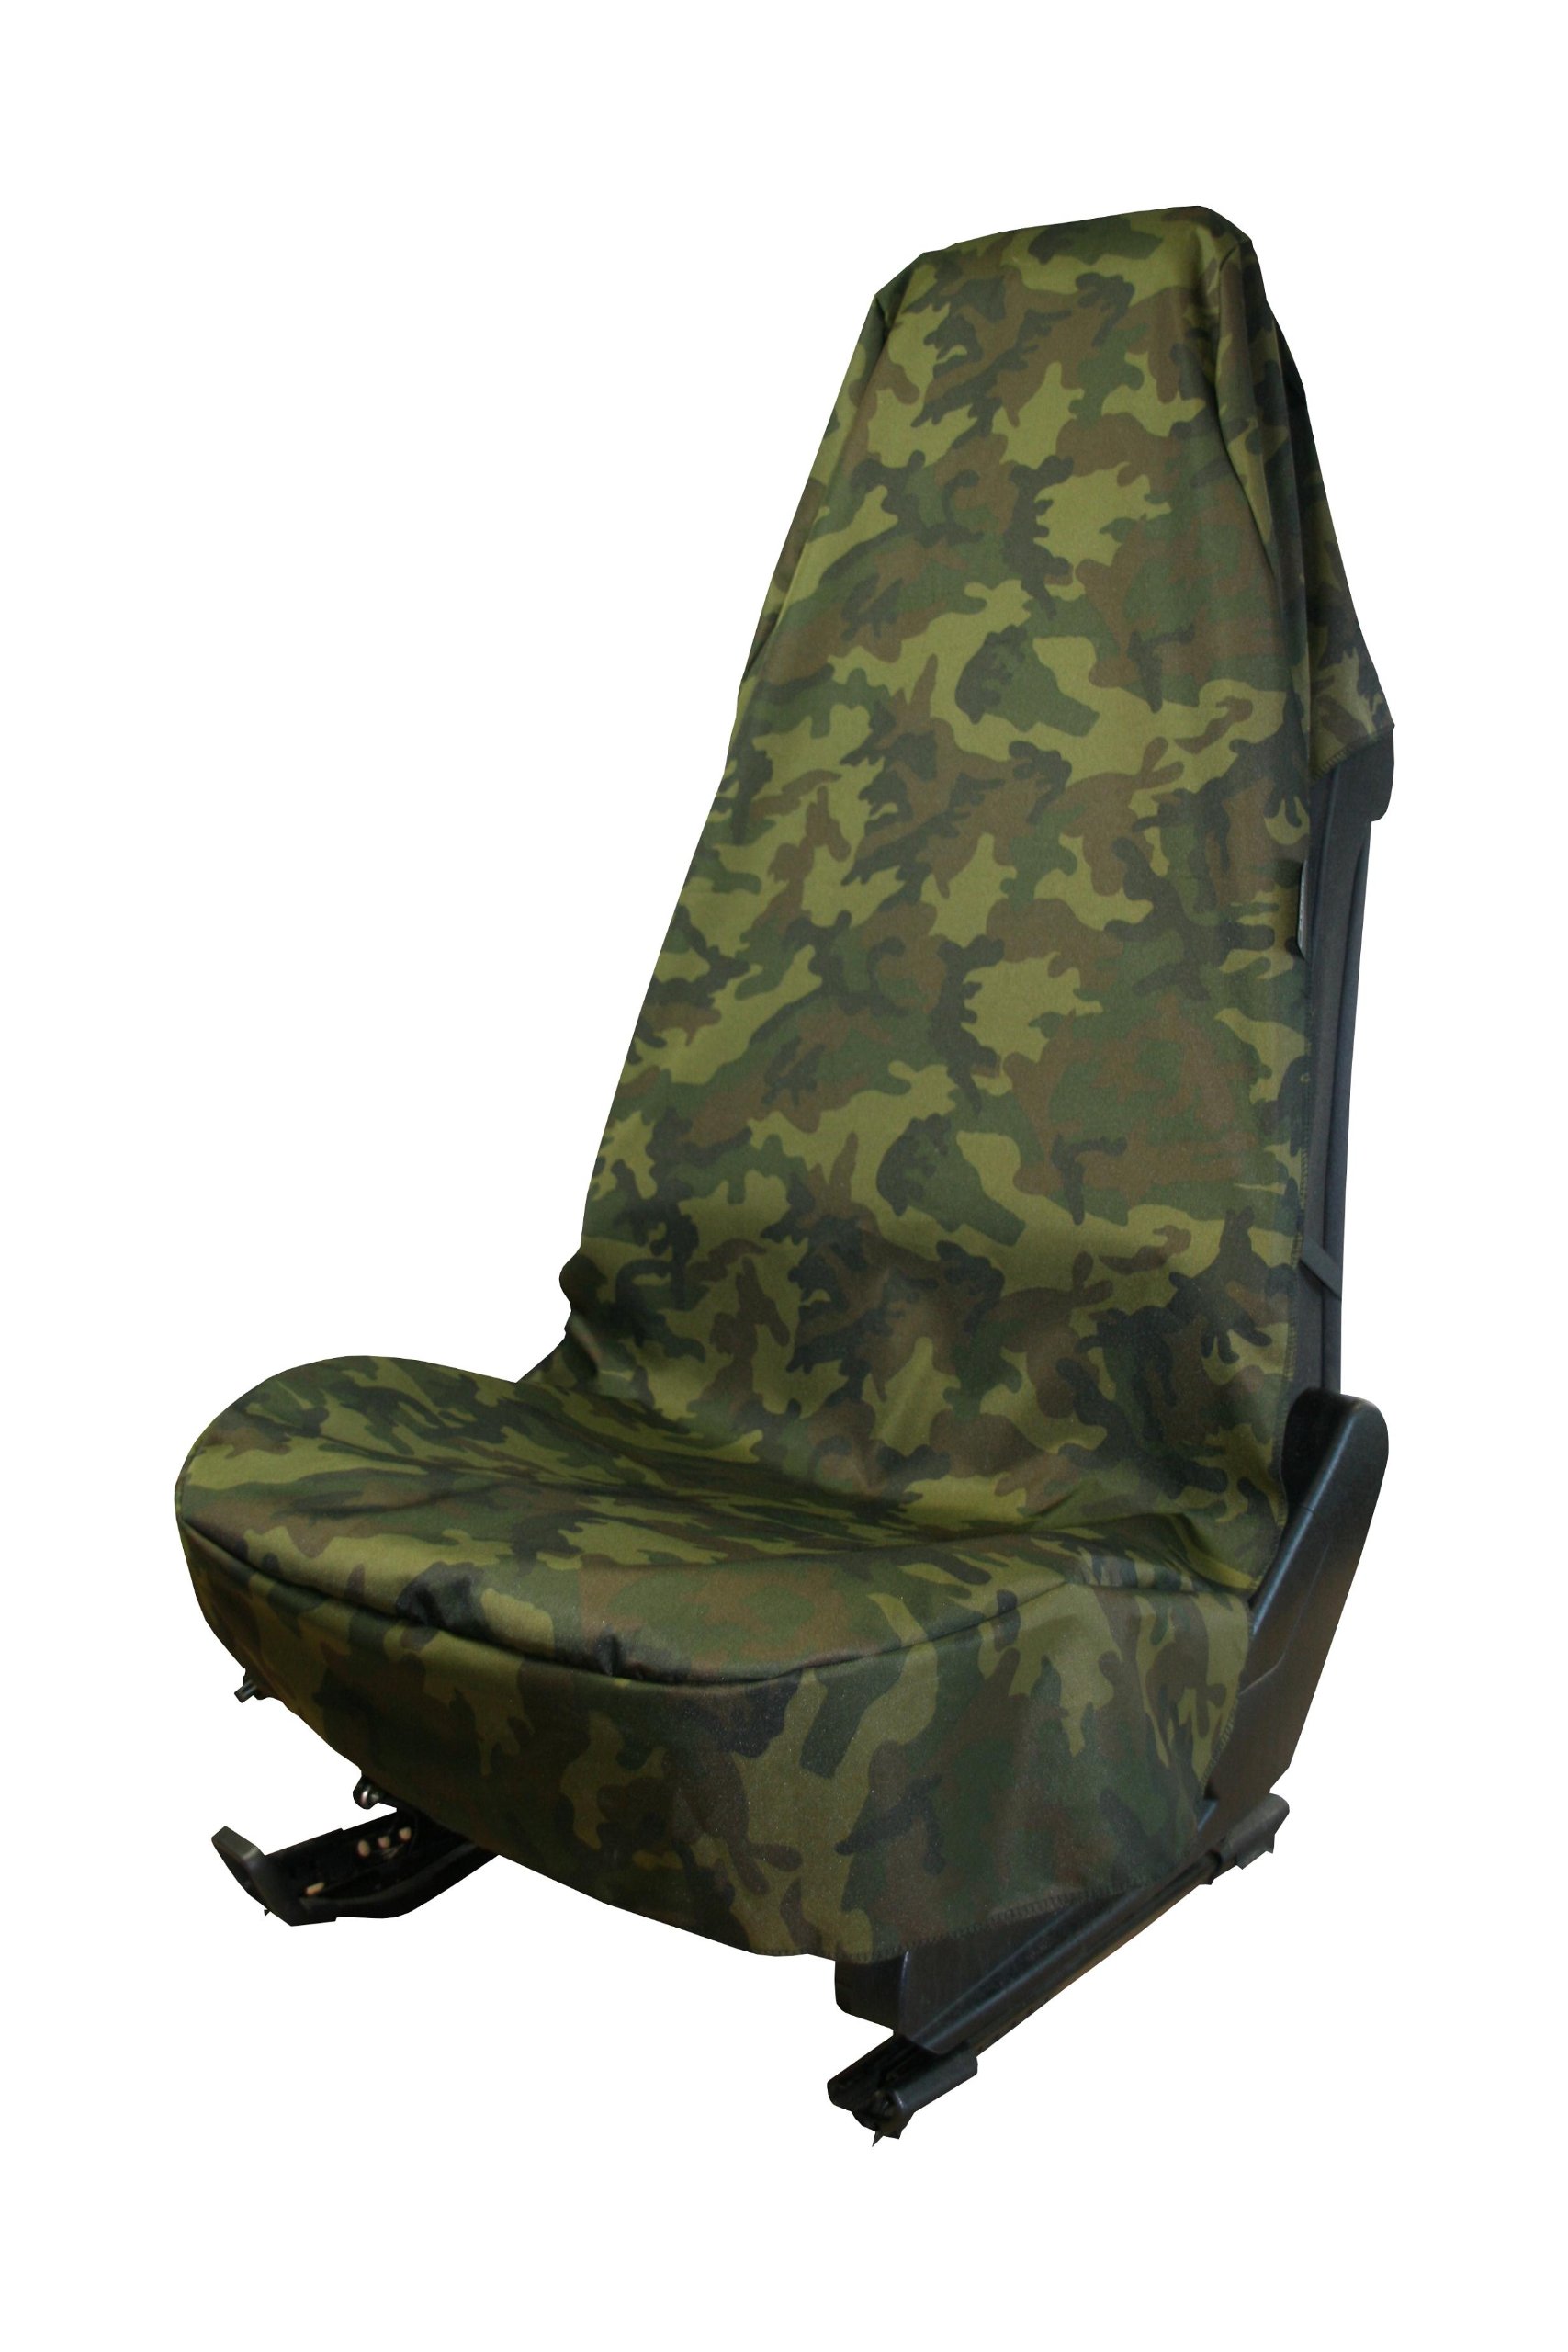 IWH Sitzschoner Camouflage, 74013 von IWH